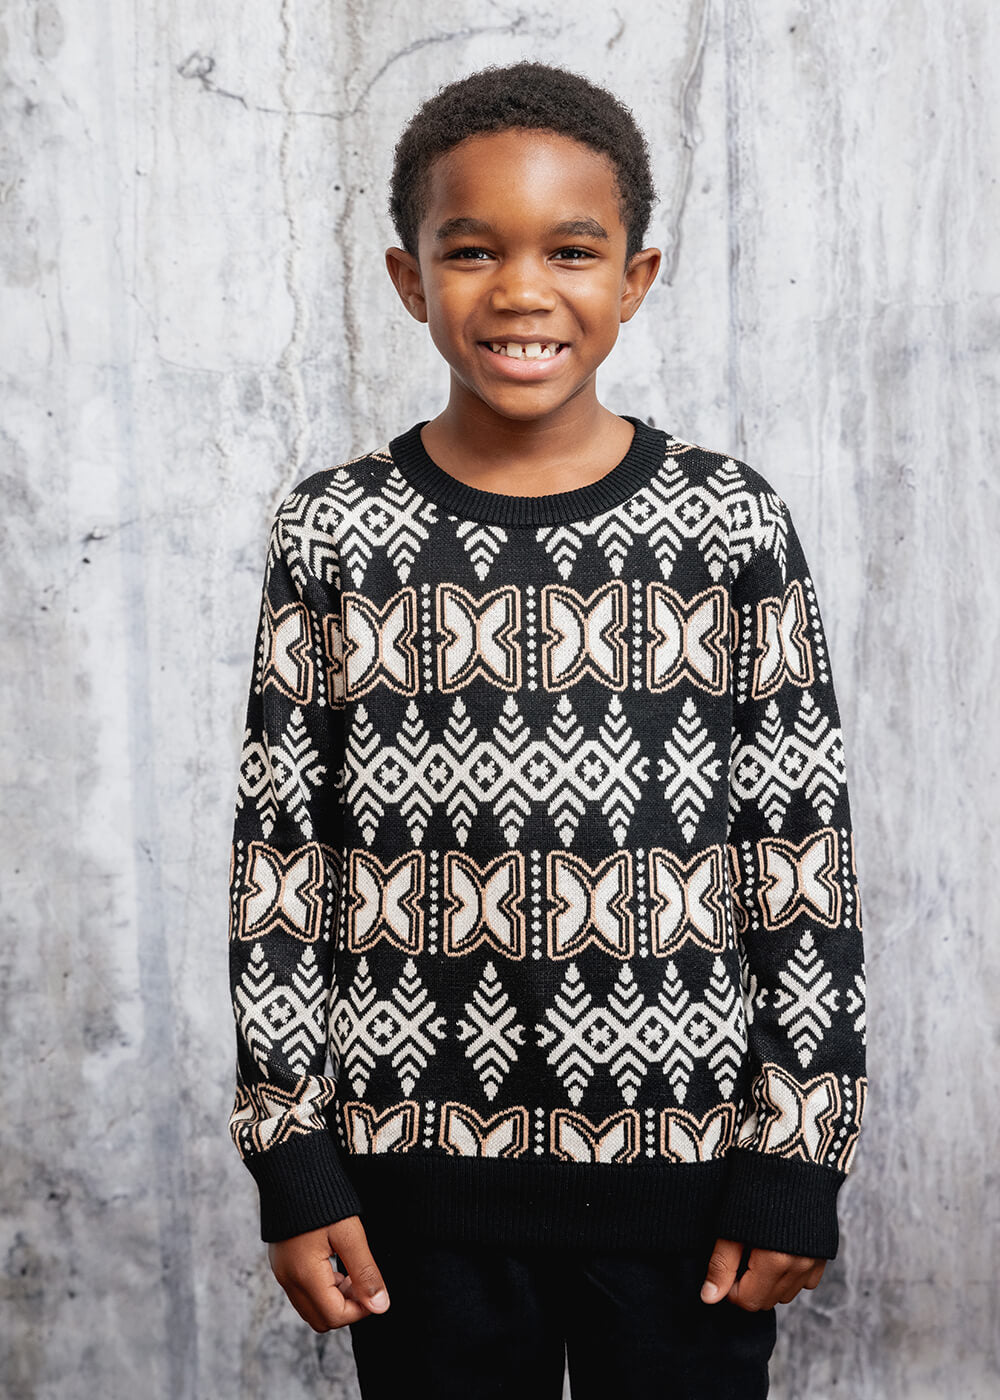 Oma African Print Kids' Sweater (Black Tan Batik)